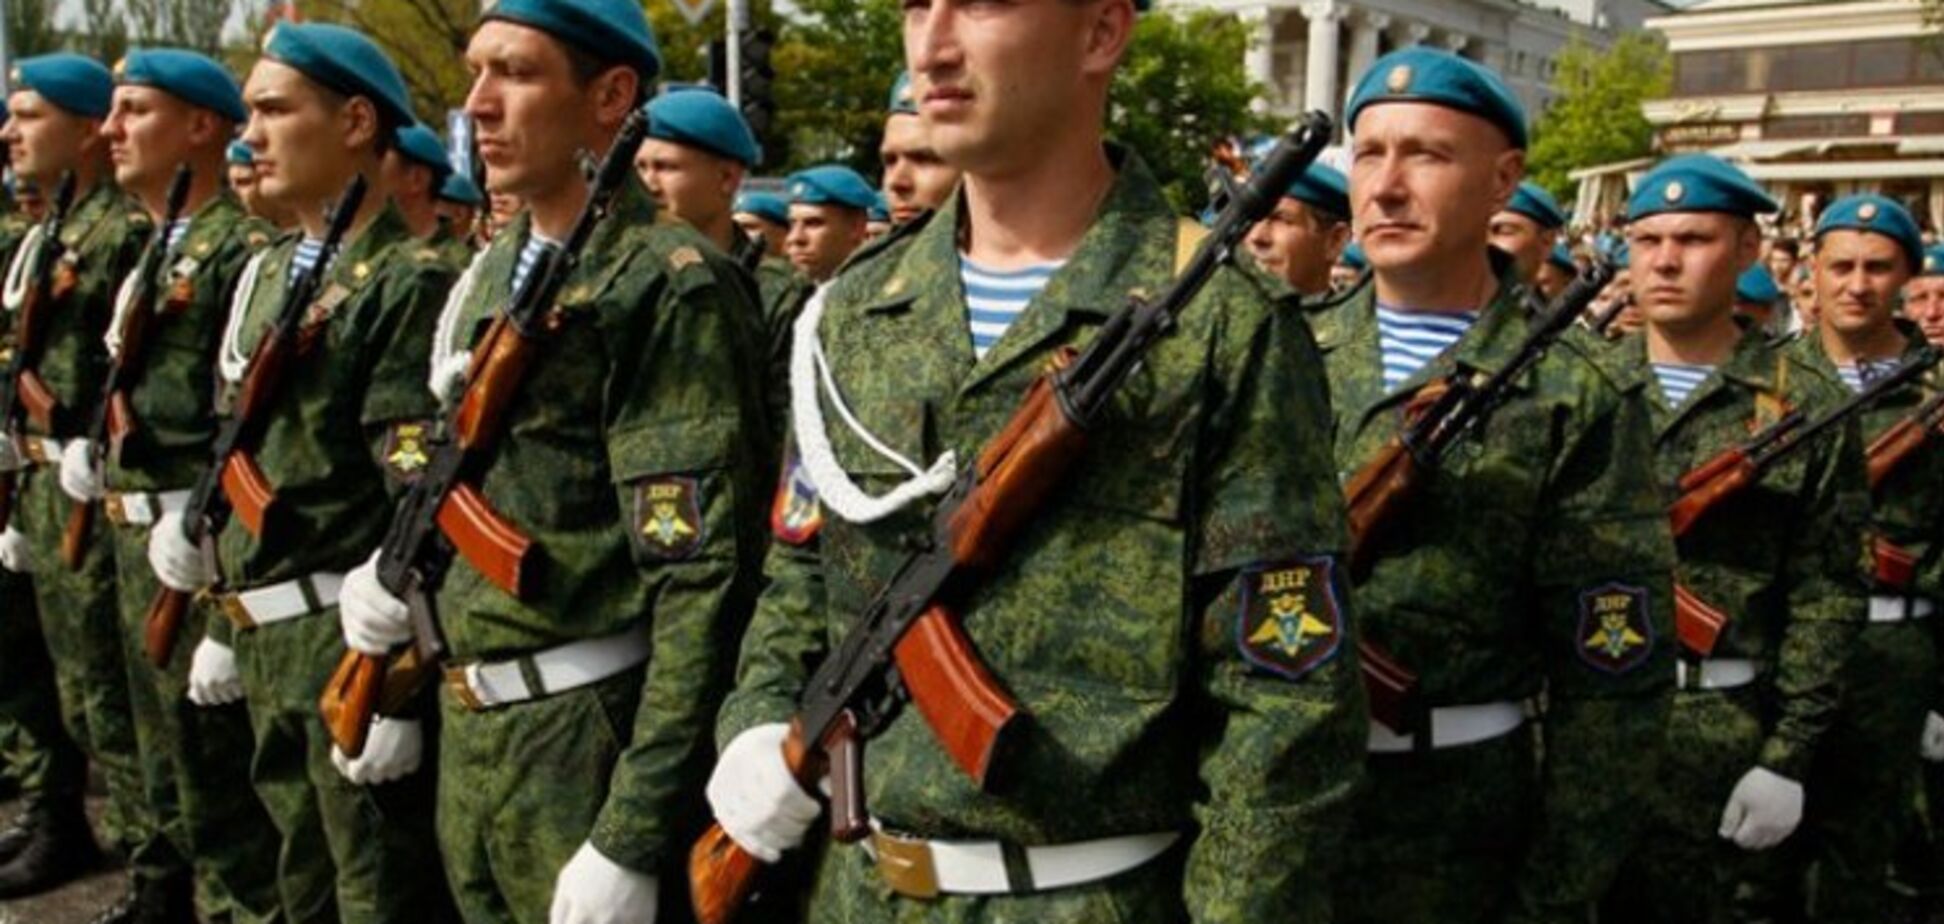 'Ніякої конспірації': український генерал розповів про устрій 'армії Л/ДНР'